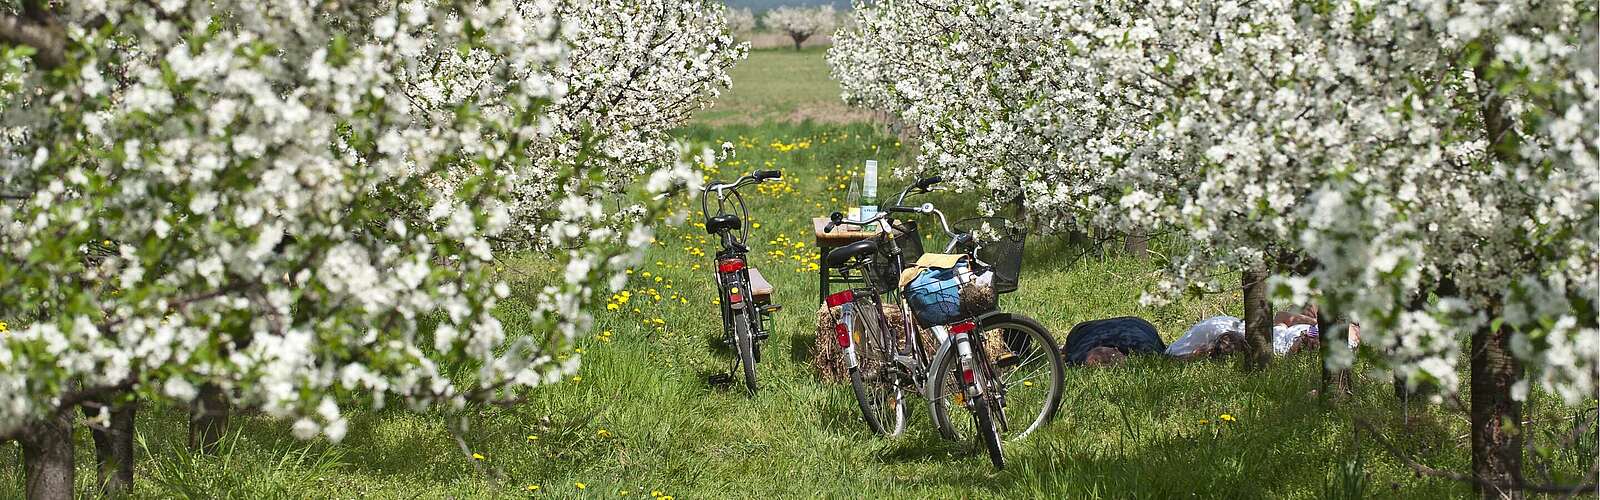 Radfahrer in Werder (Havel) zur Baumblüte,
        
    

        Foto: TMB-Fotoarchiv/Yorck Maecke